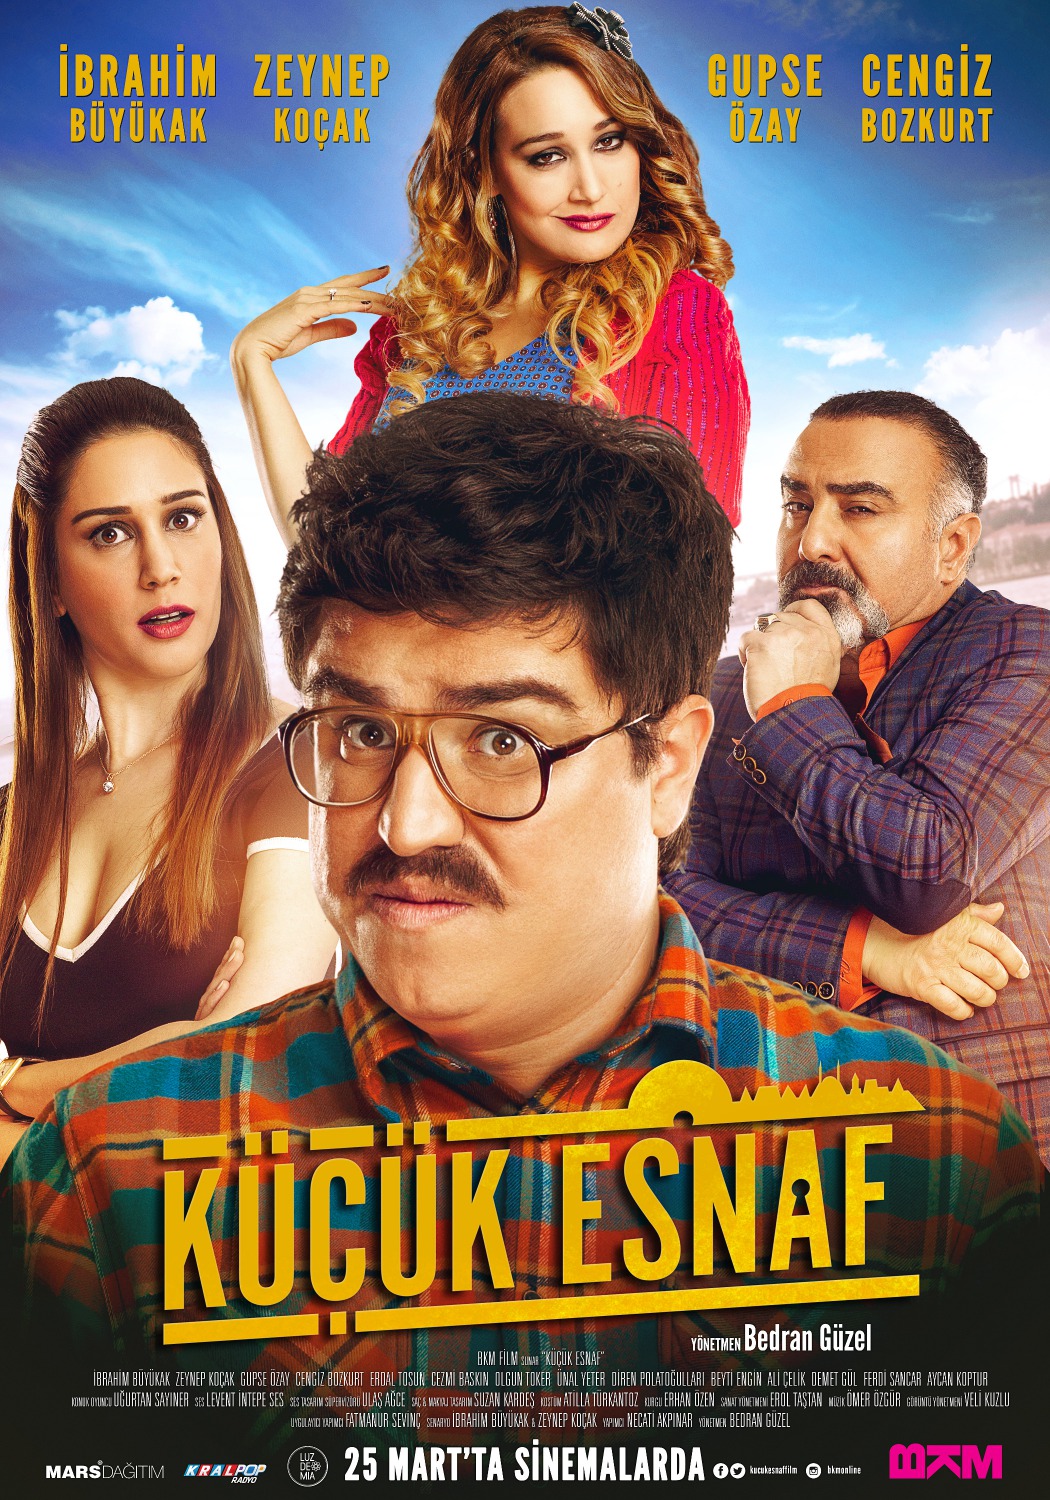 Extra Large Movie Poster Image for Küçük Esnaf 